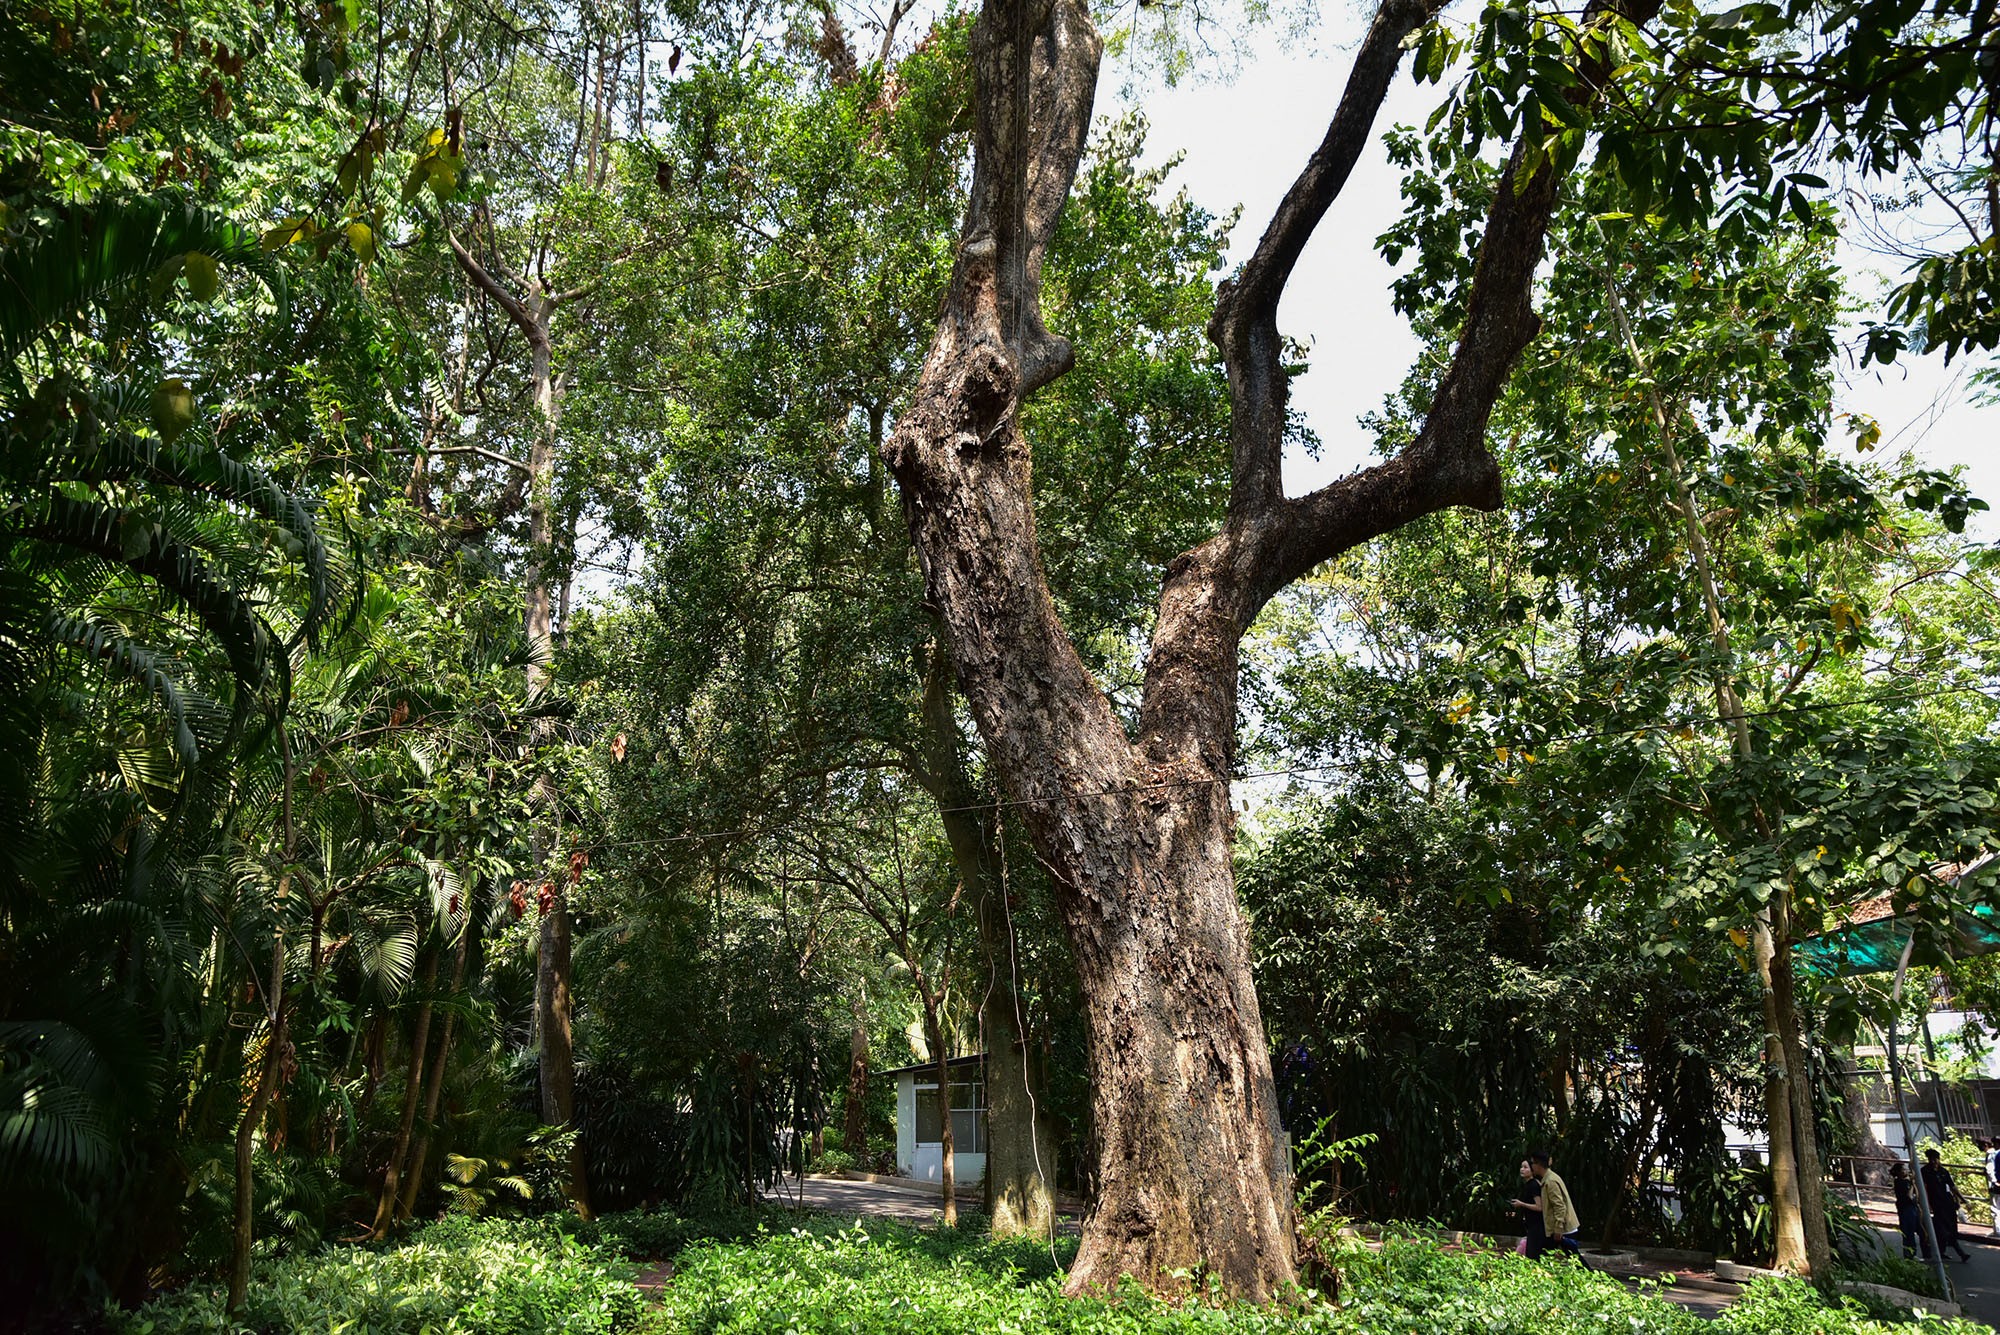 Toạ lạc giữa khu nuôi hà mã và hươu cao cổ là cây giáng hương trên 200 tuổi. “Cụ” cây này có mặt tại đây trước khi thành lập sở thú hơn nửa thế kỷ. Giáng hương là loài gỗ quý, bền, nhựa có màu đỏ như máu, có vân rất đẹp. Đây là loài cây mối mọt không đụng đến nên thường bị khai thác, săn lùng. Loài này được ghi vào Sách đỏ Việt Nam, thuộc dạng nguy cấp.